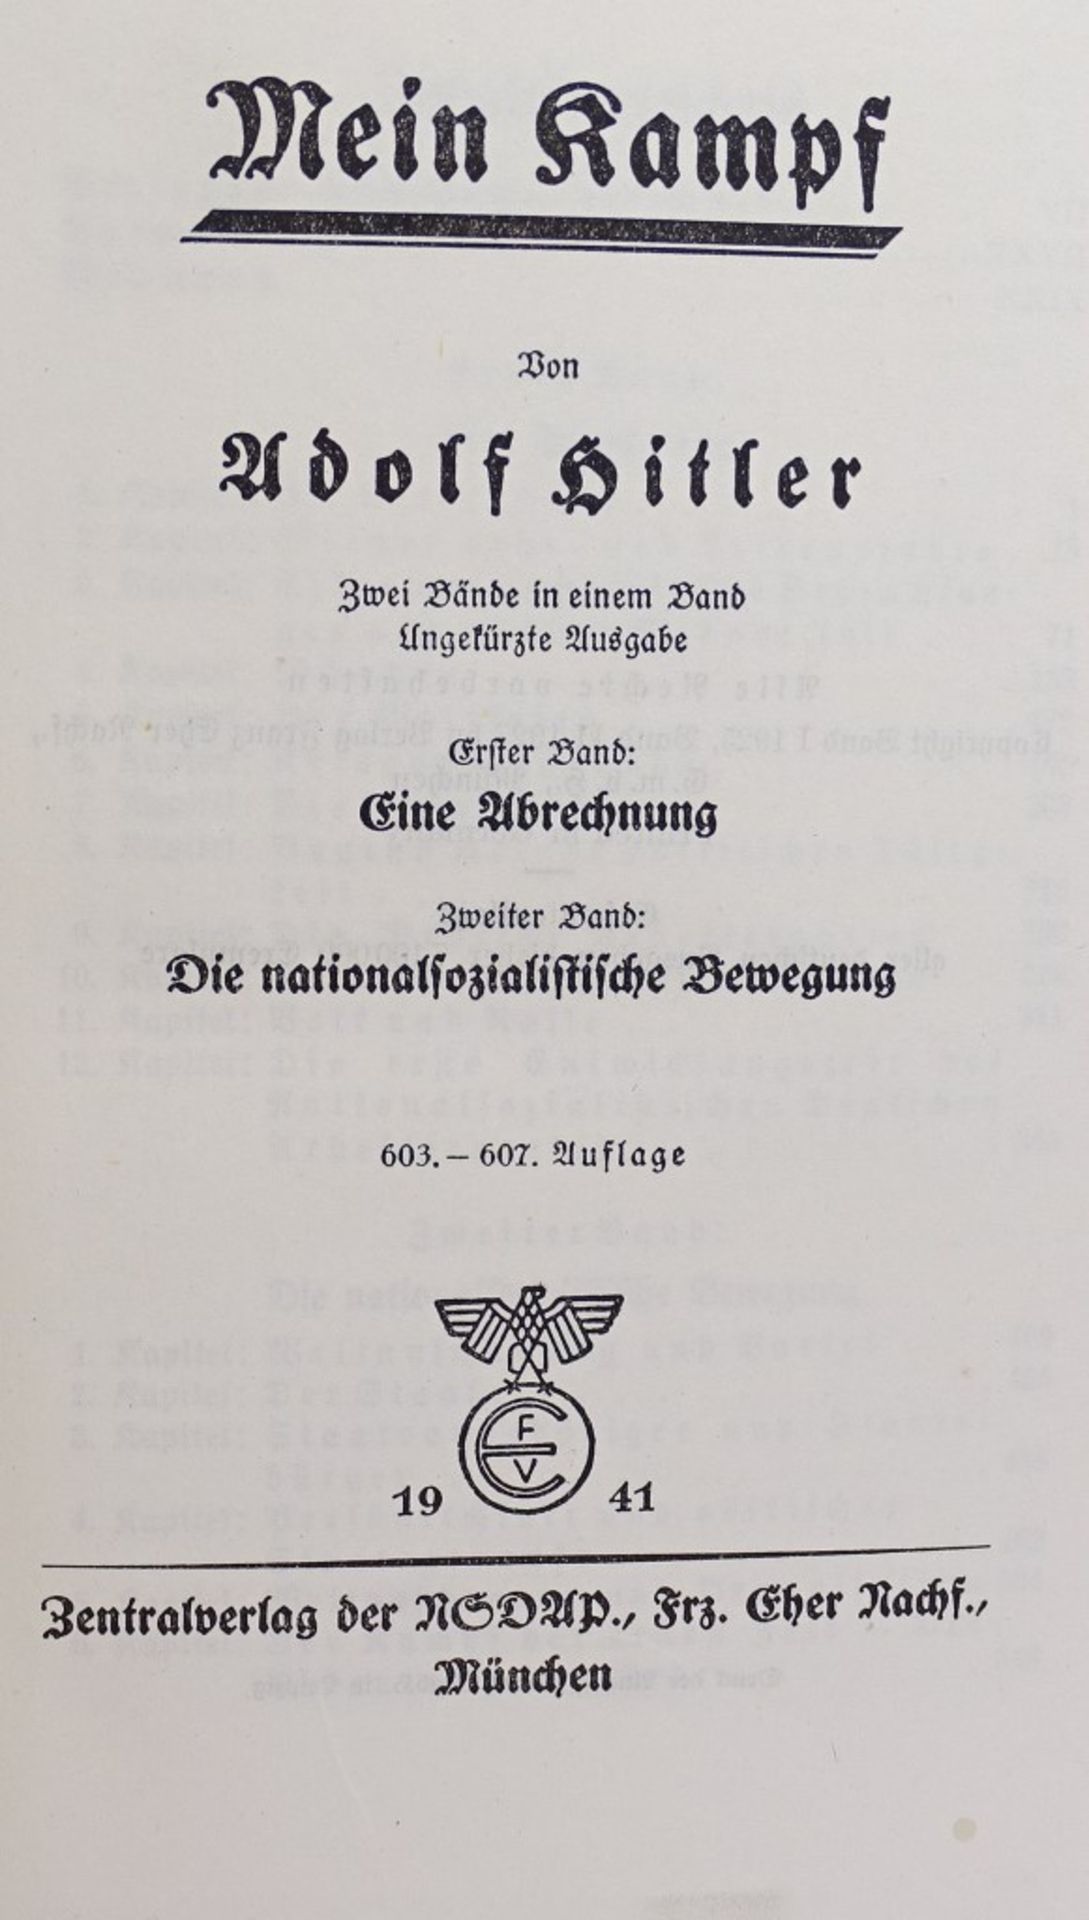 Adolf Hitler "Mein Kampf",blaue Ausgabe, 1941 ,sehr gut erhalten - Bild 2 aus 5